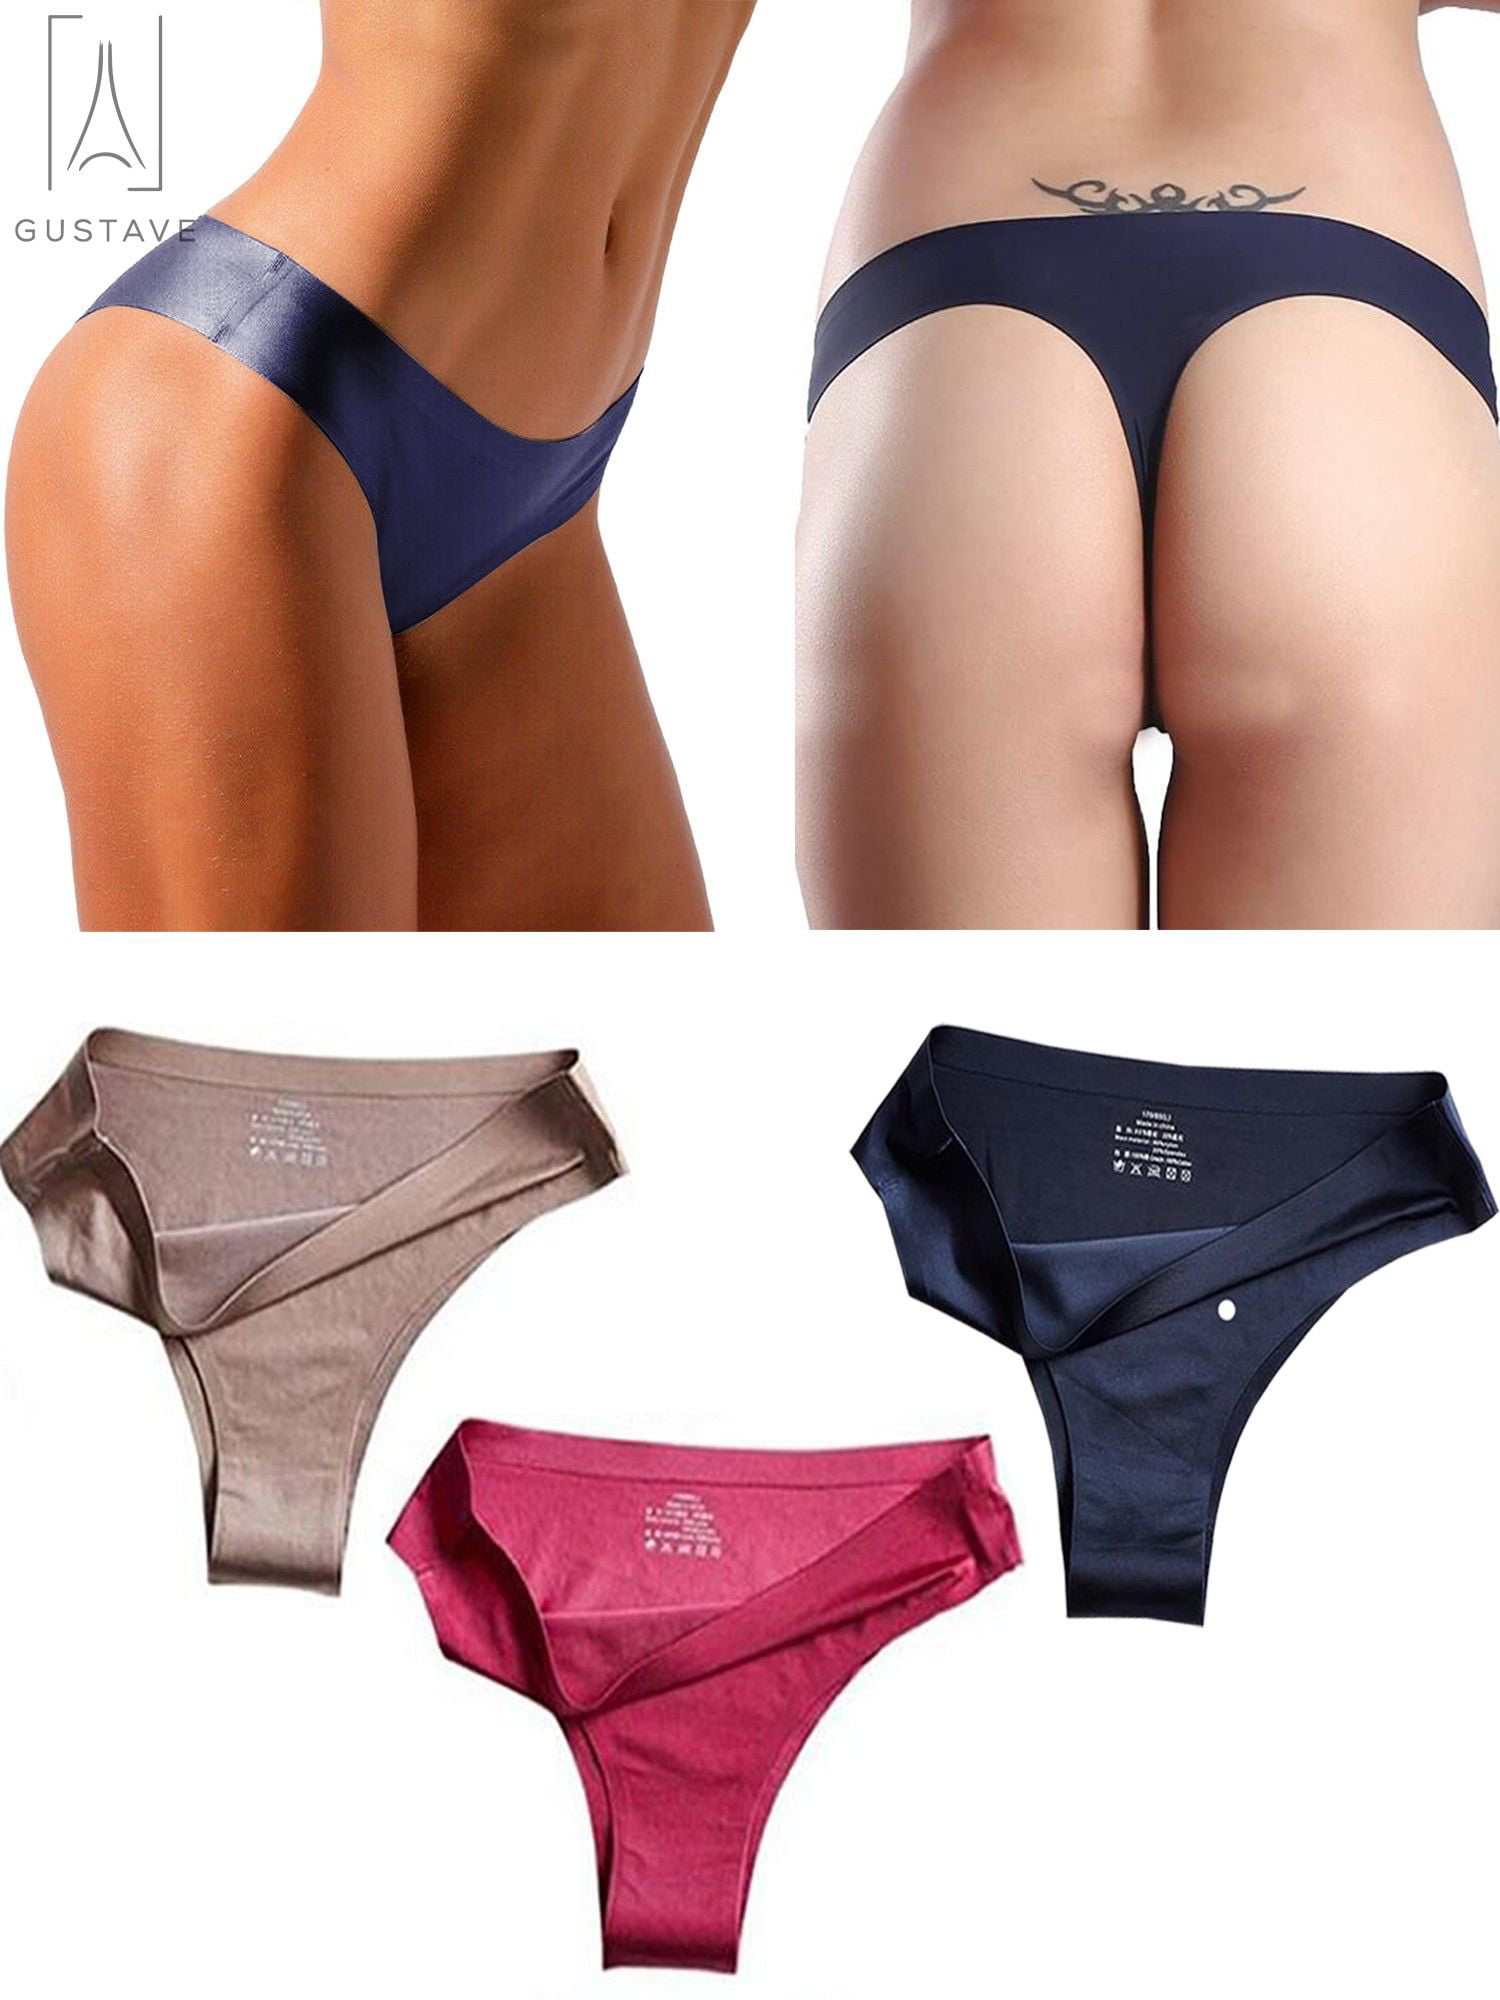 Women Ladies G-string Briefs Panties Seamless Thongs Lingerie Underwear Knickers 